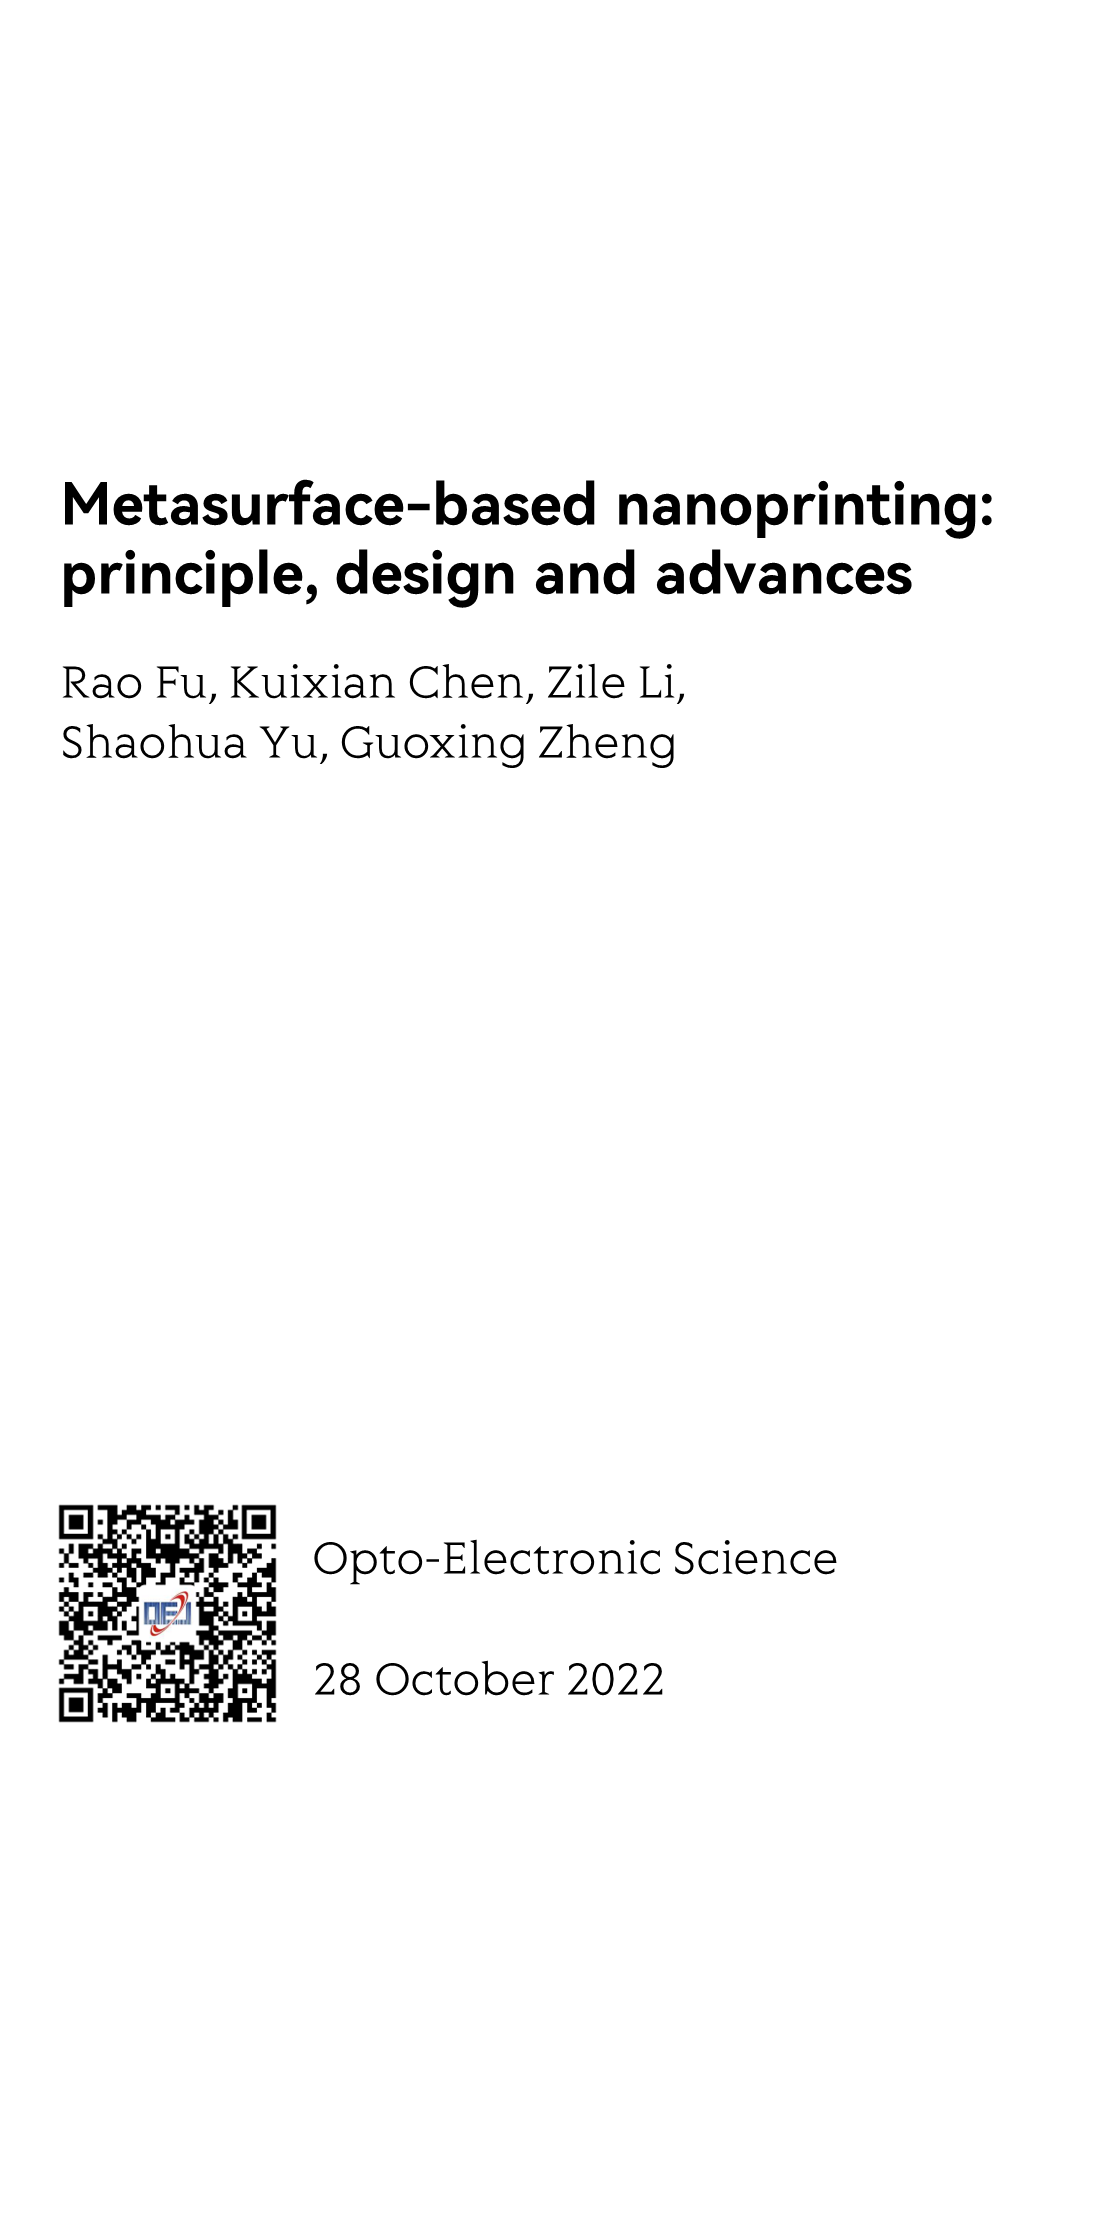 Metasurface-based nanoprinting: principle, design and advances_1